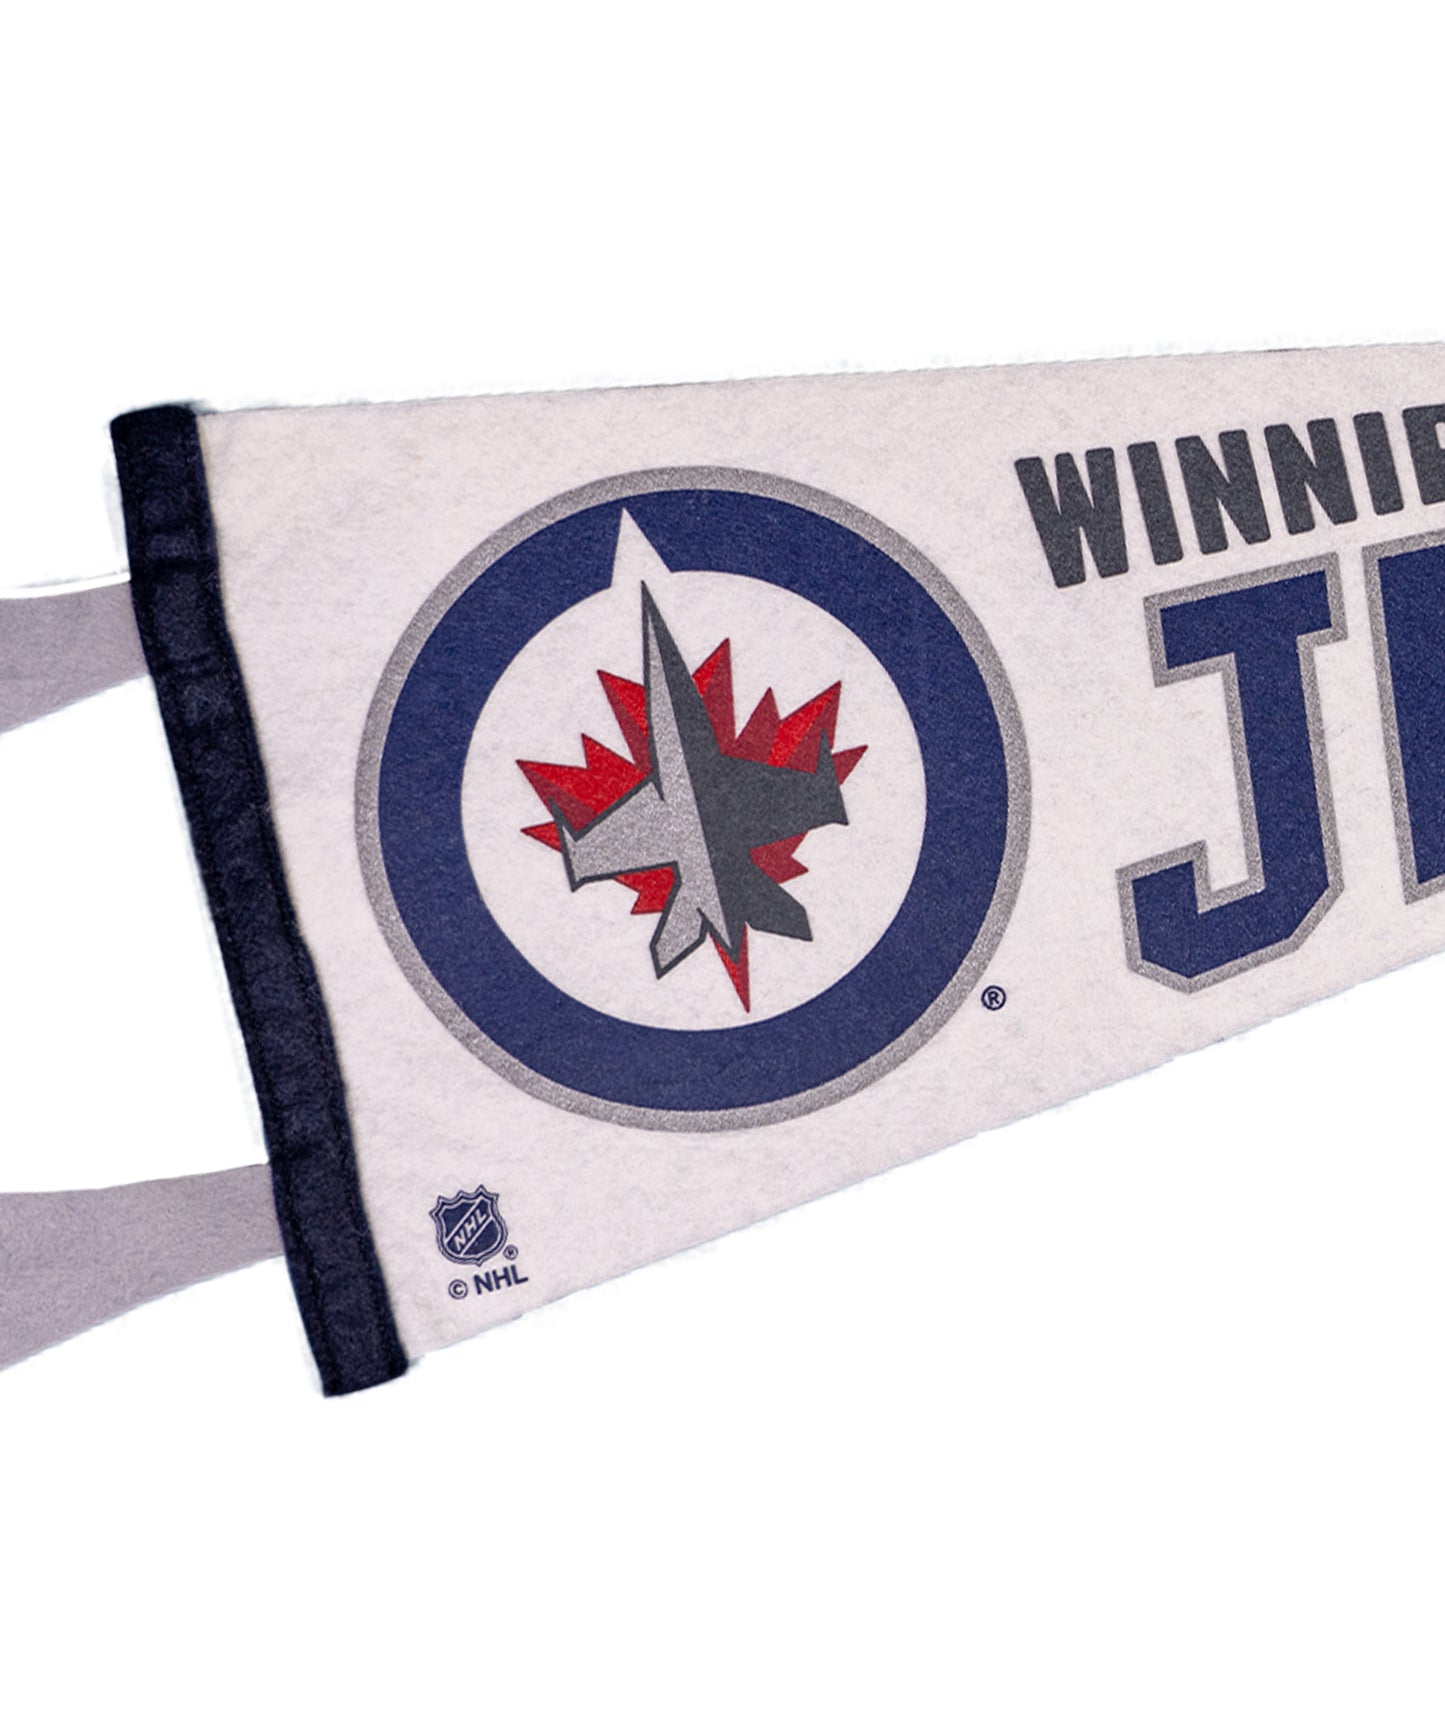 Winnipeg Jets Pennant • NHL x Oxford Pennant